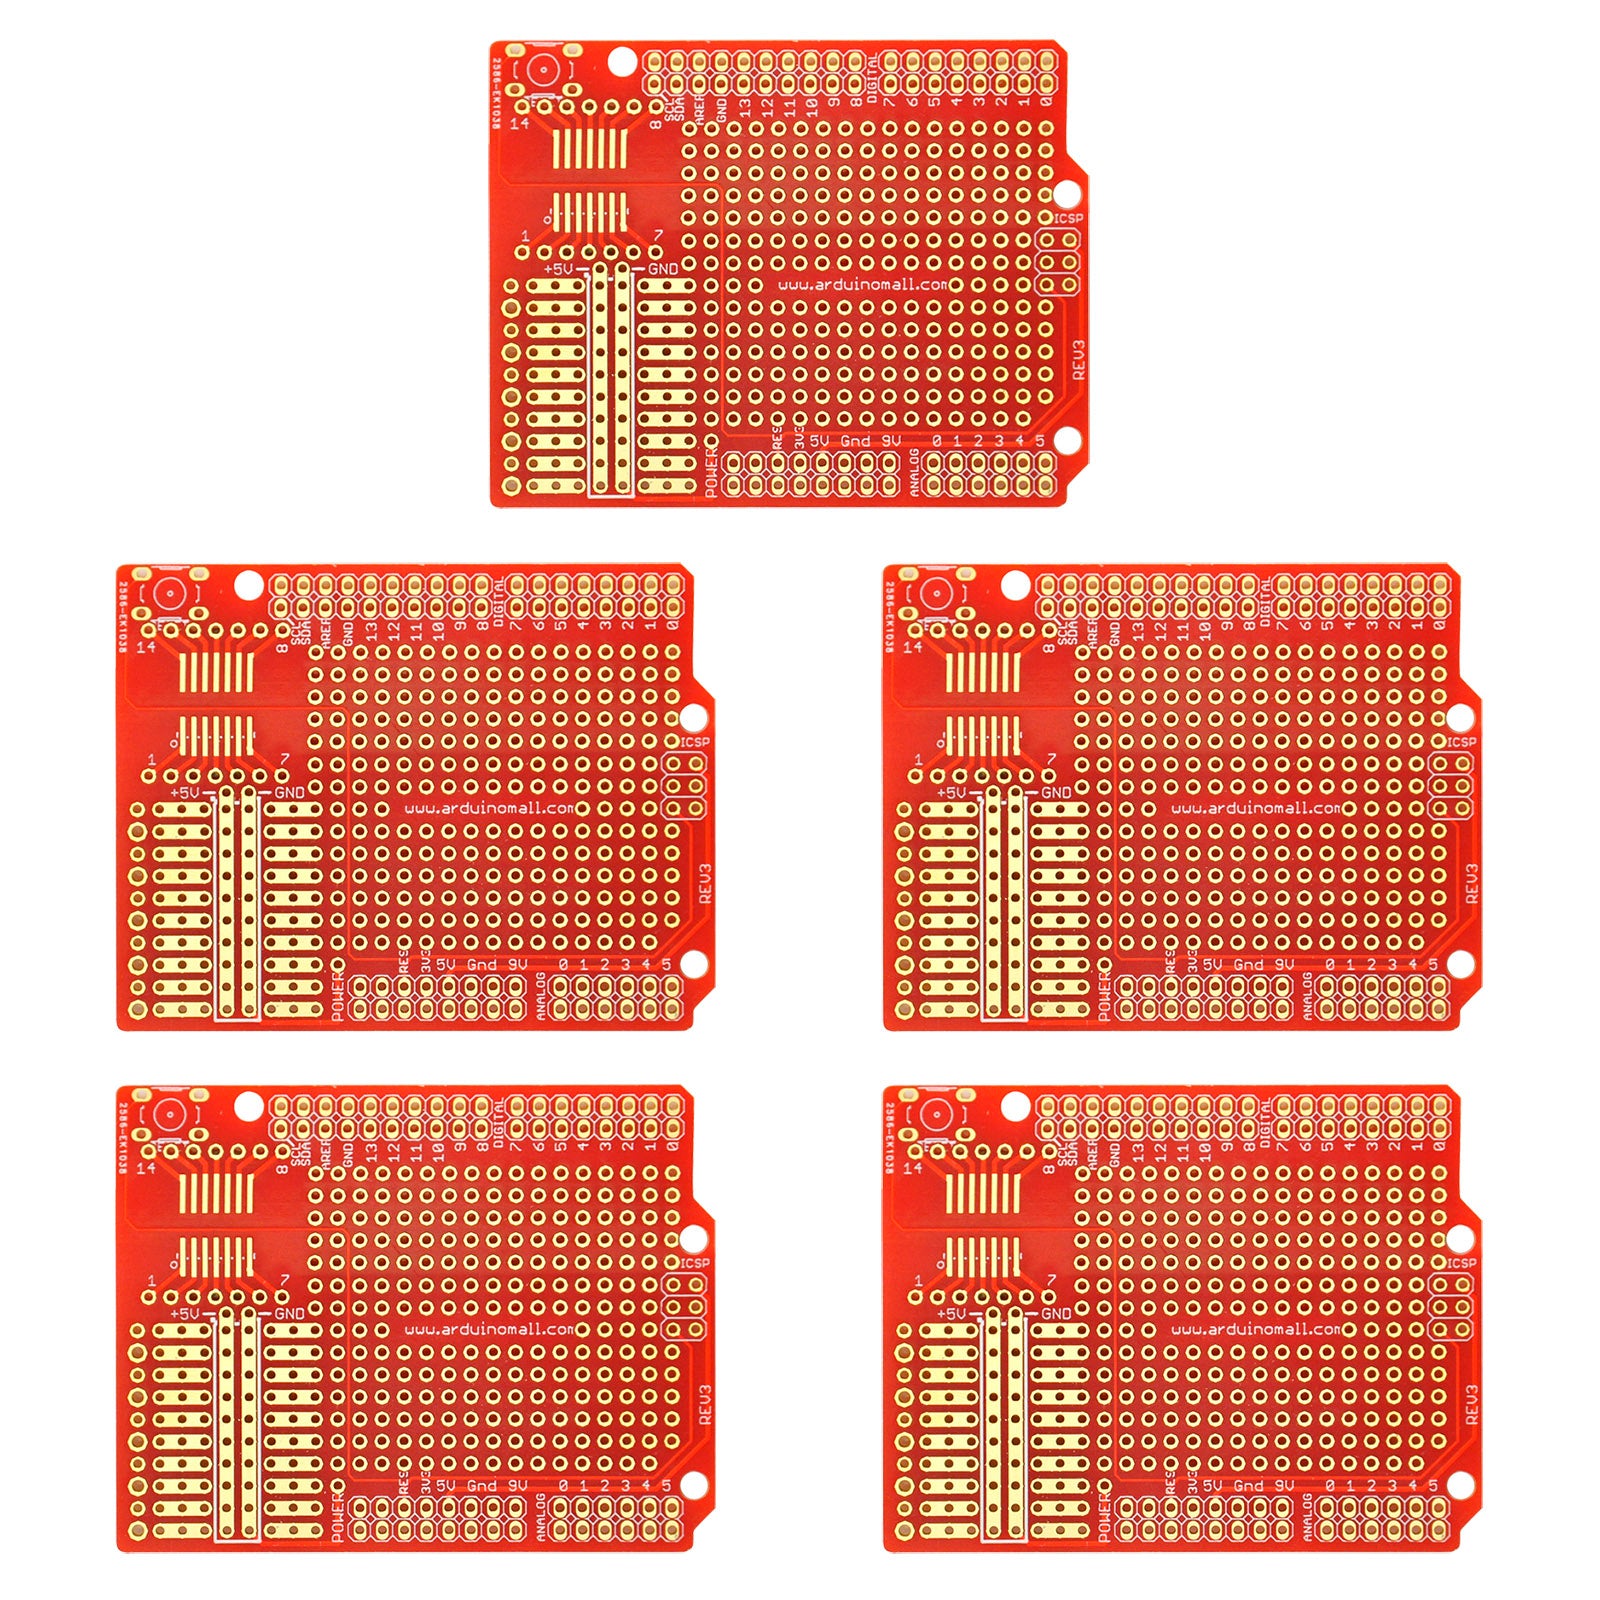 Gikfun Prototype PCB Breadboard for Arduino UNO R3 Shield Board (Pack of 5pcs)